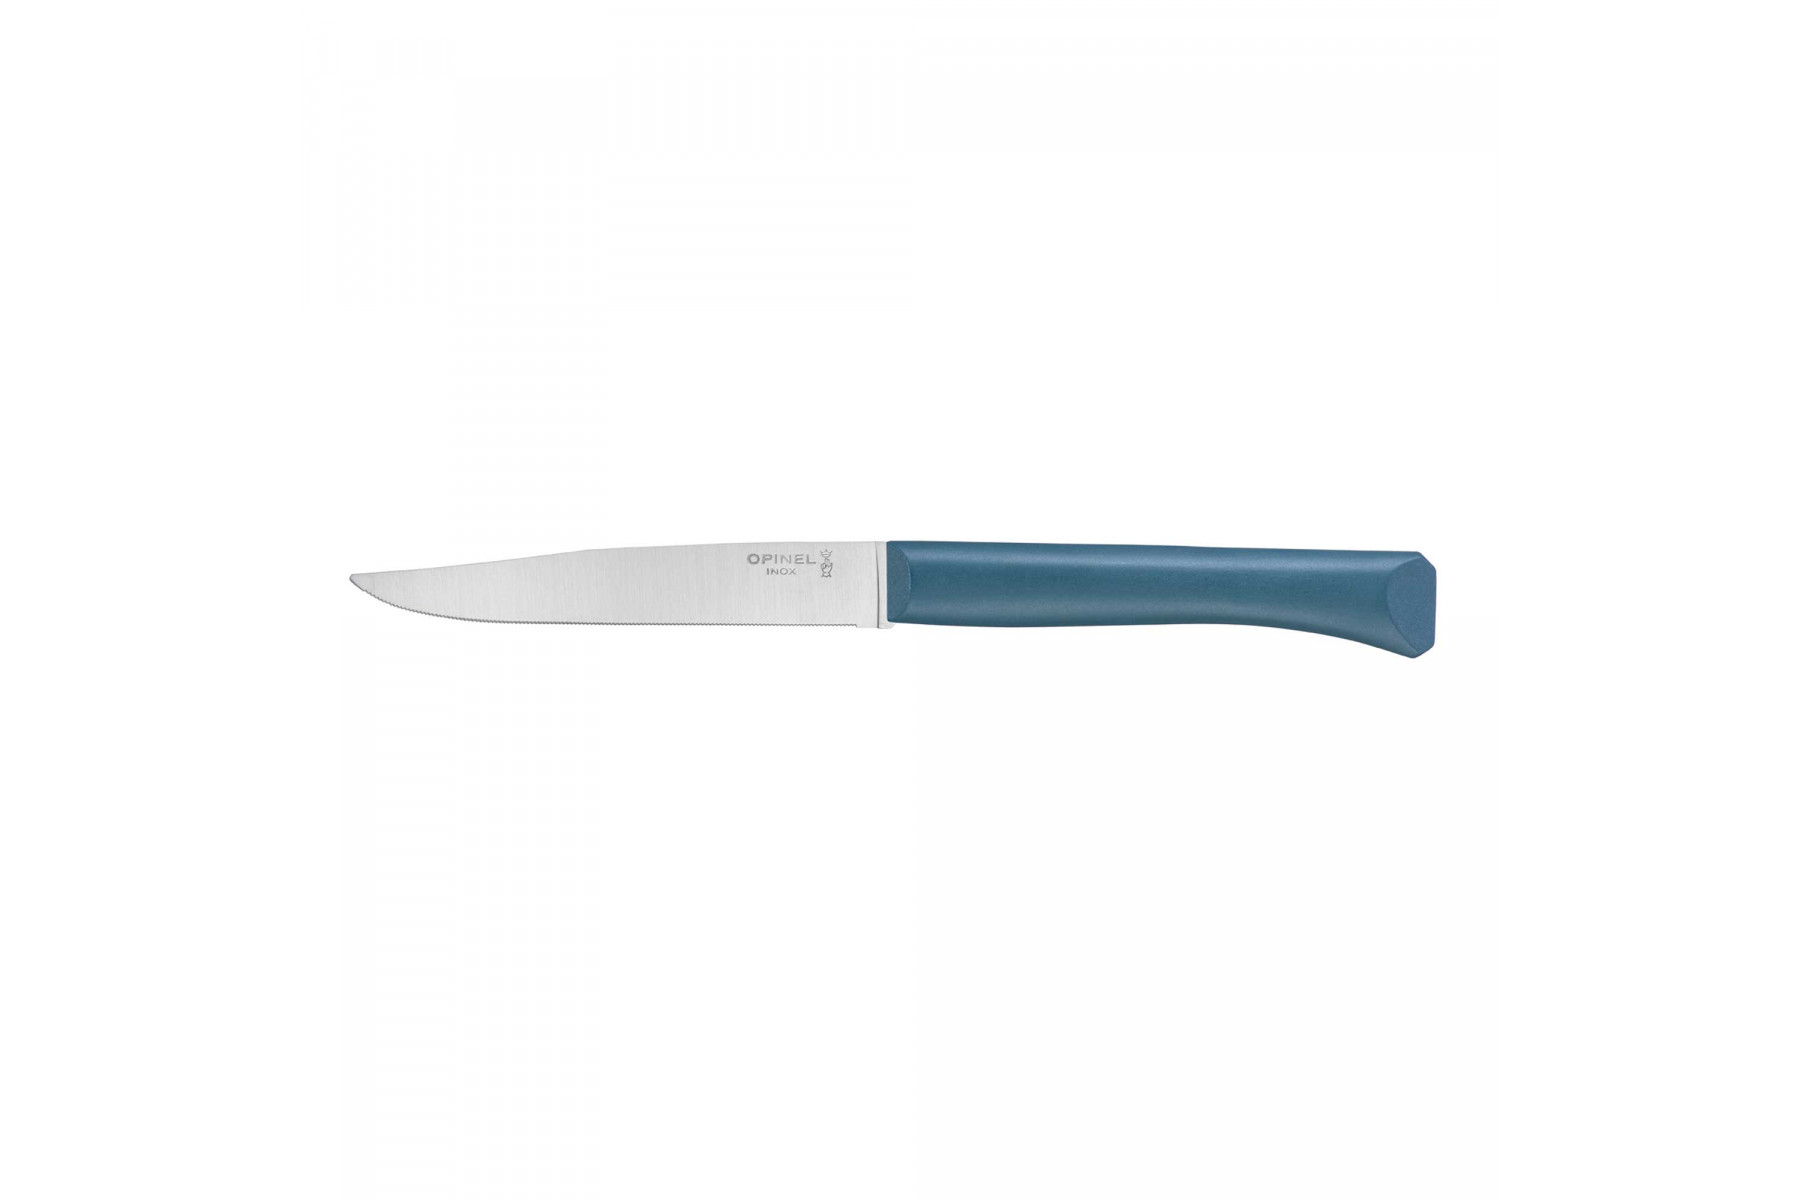 Couteau de table Opinel Bon Appétit bleu canard